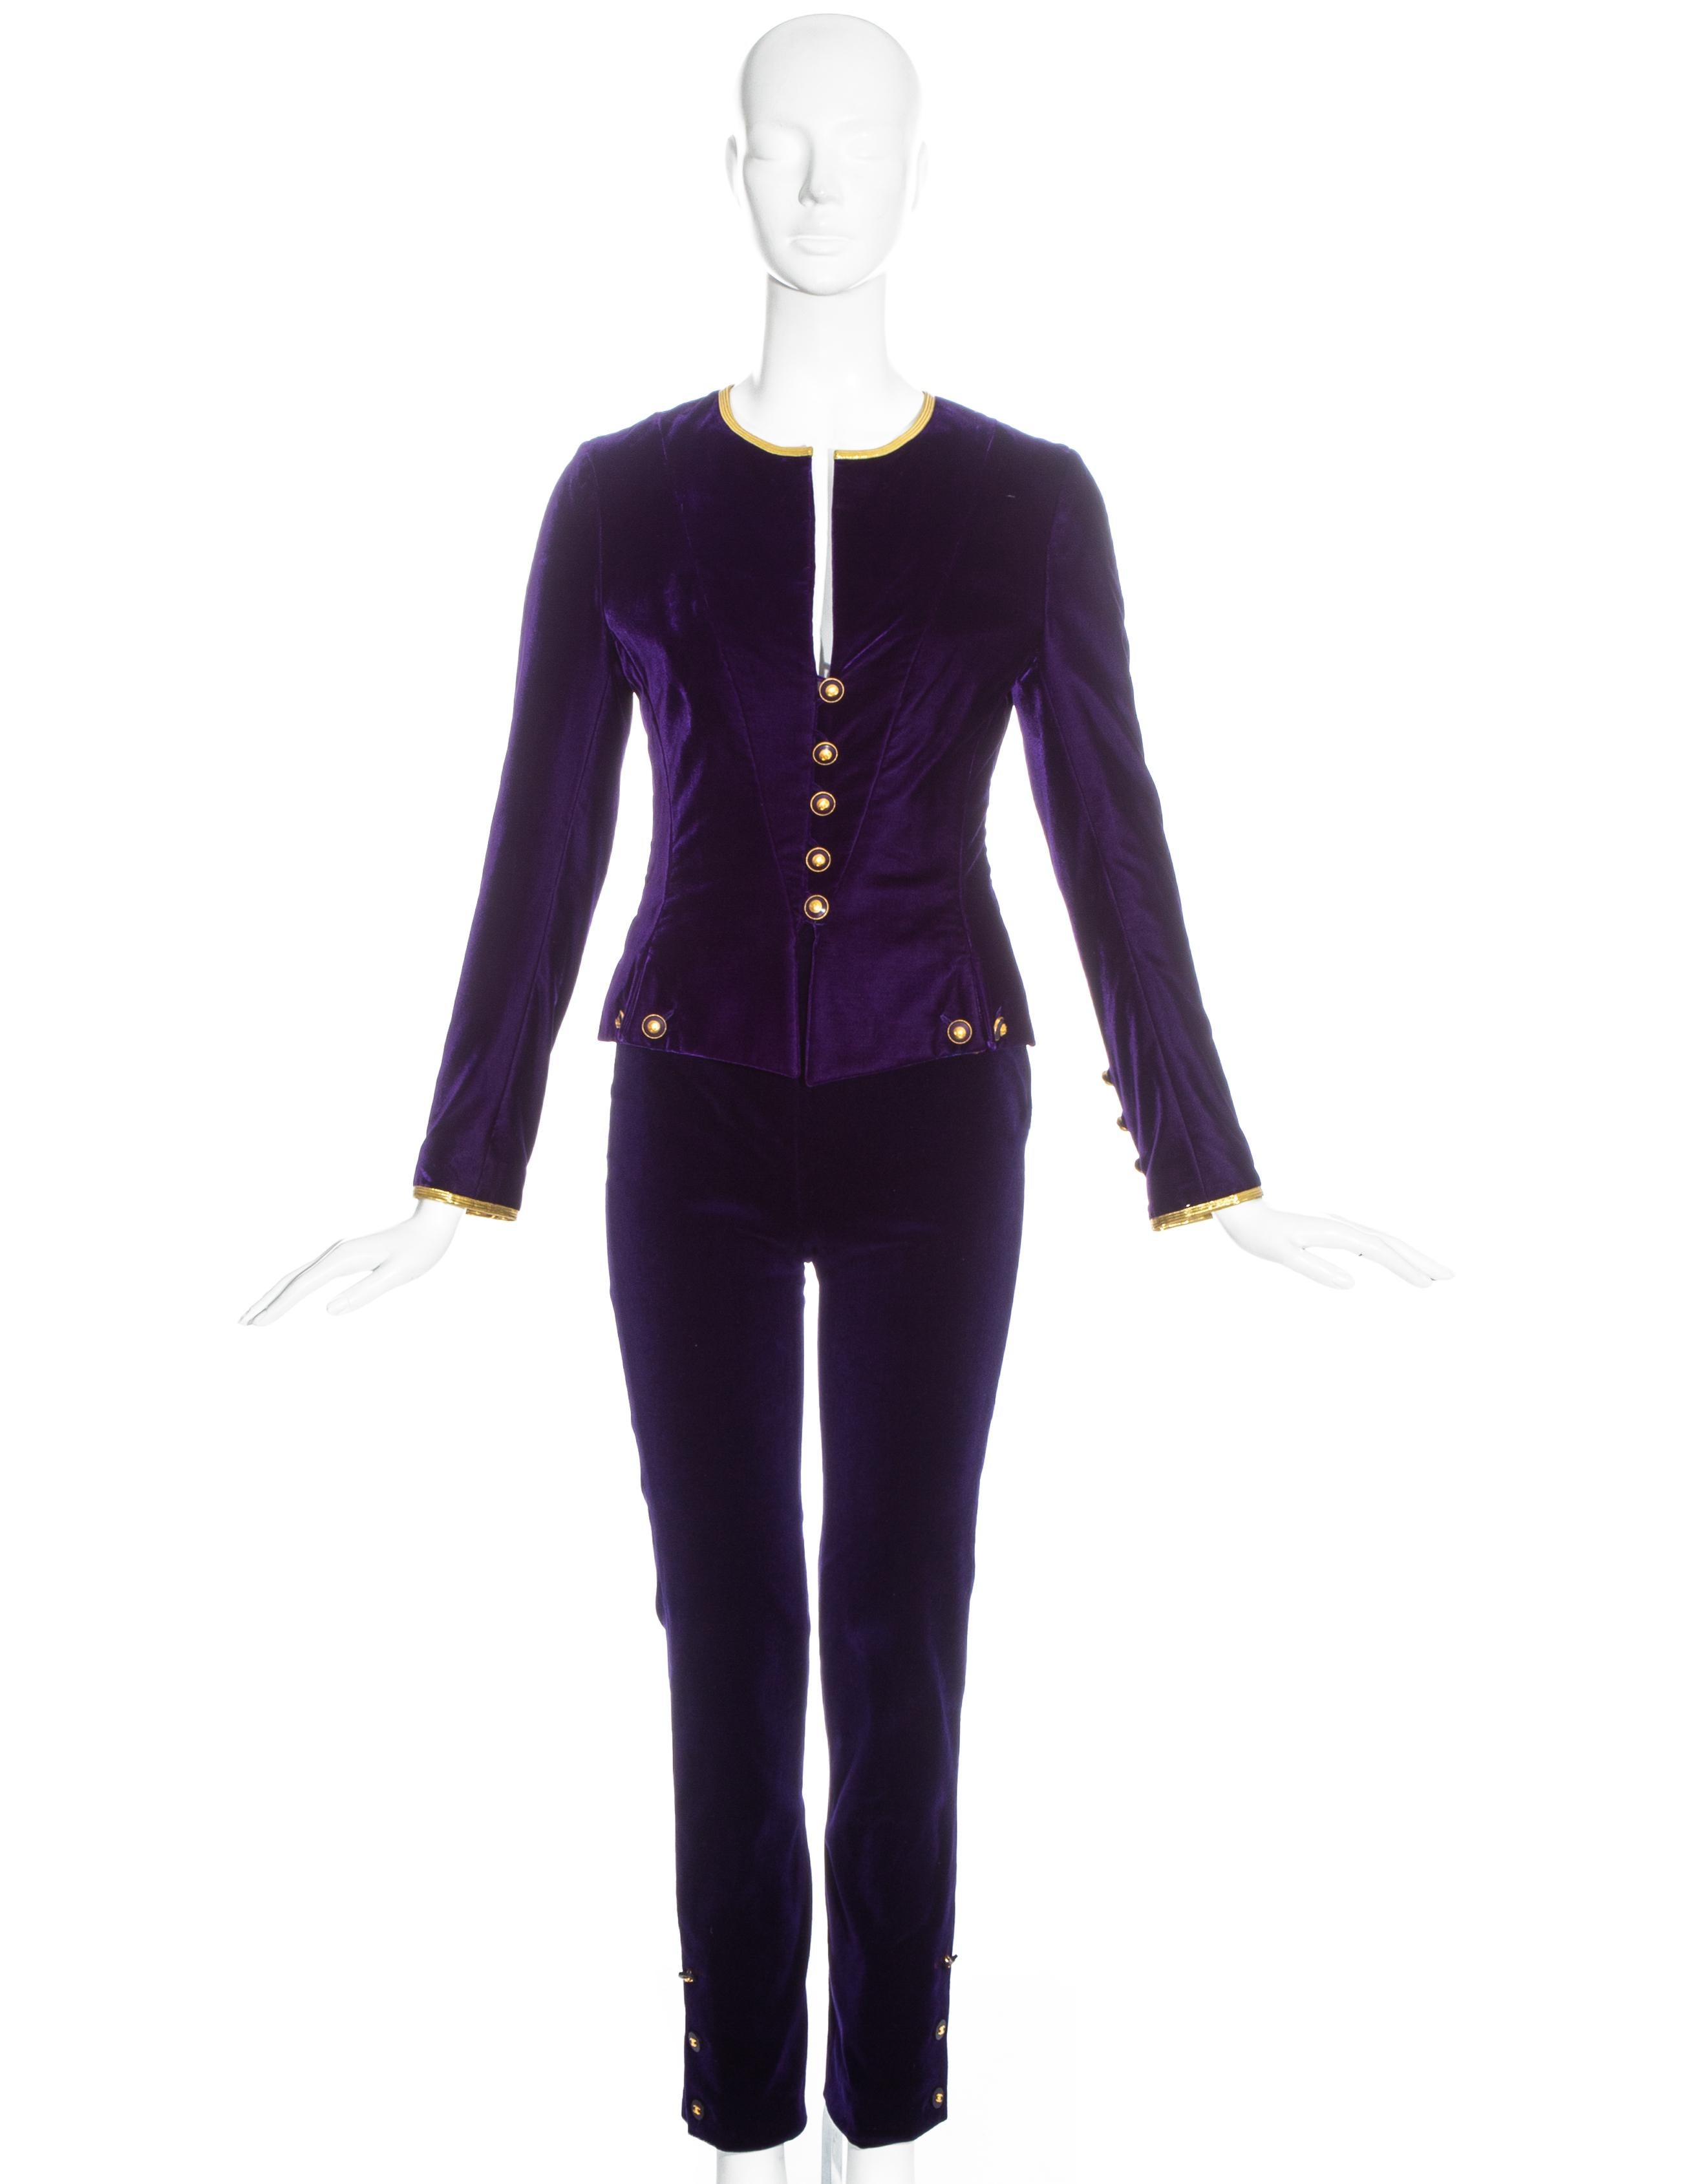 Chanel par Karl Lagerfeld, tailleur pantalon en velours violet comprenant : veste ajustée avec garniture métallique dorée, boutons chanel dorés et doublure en soie ; pantalon ajusté à taille haute avec boutons chanel sur le côté. 

Automne-Hiver 1993